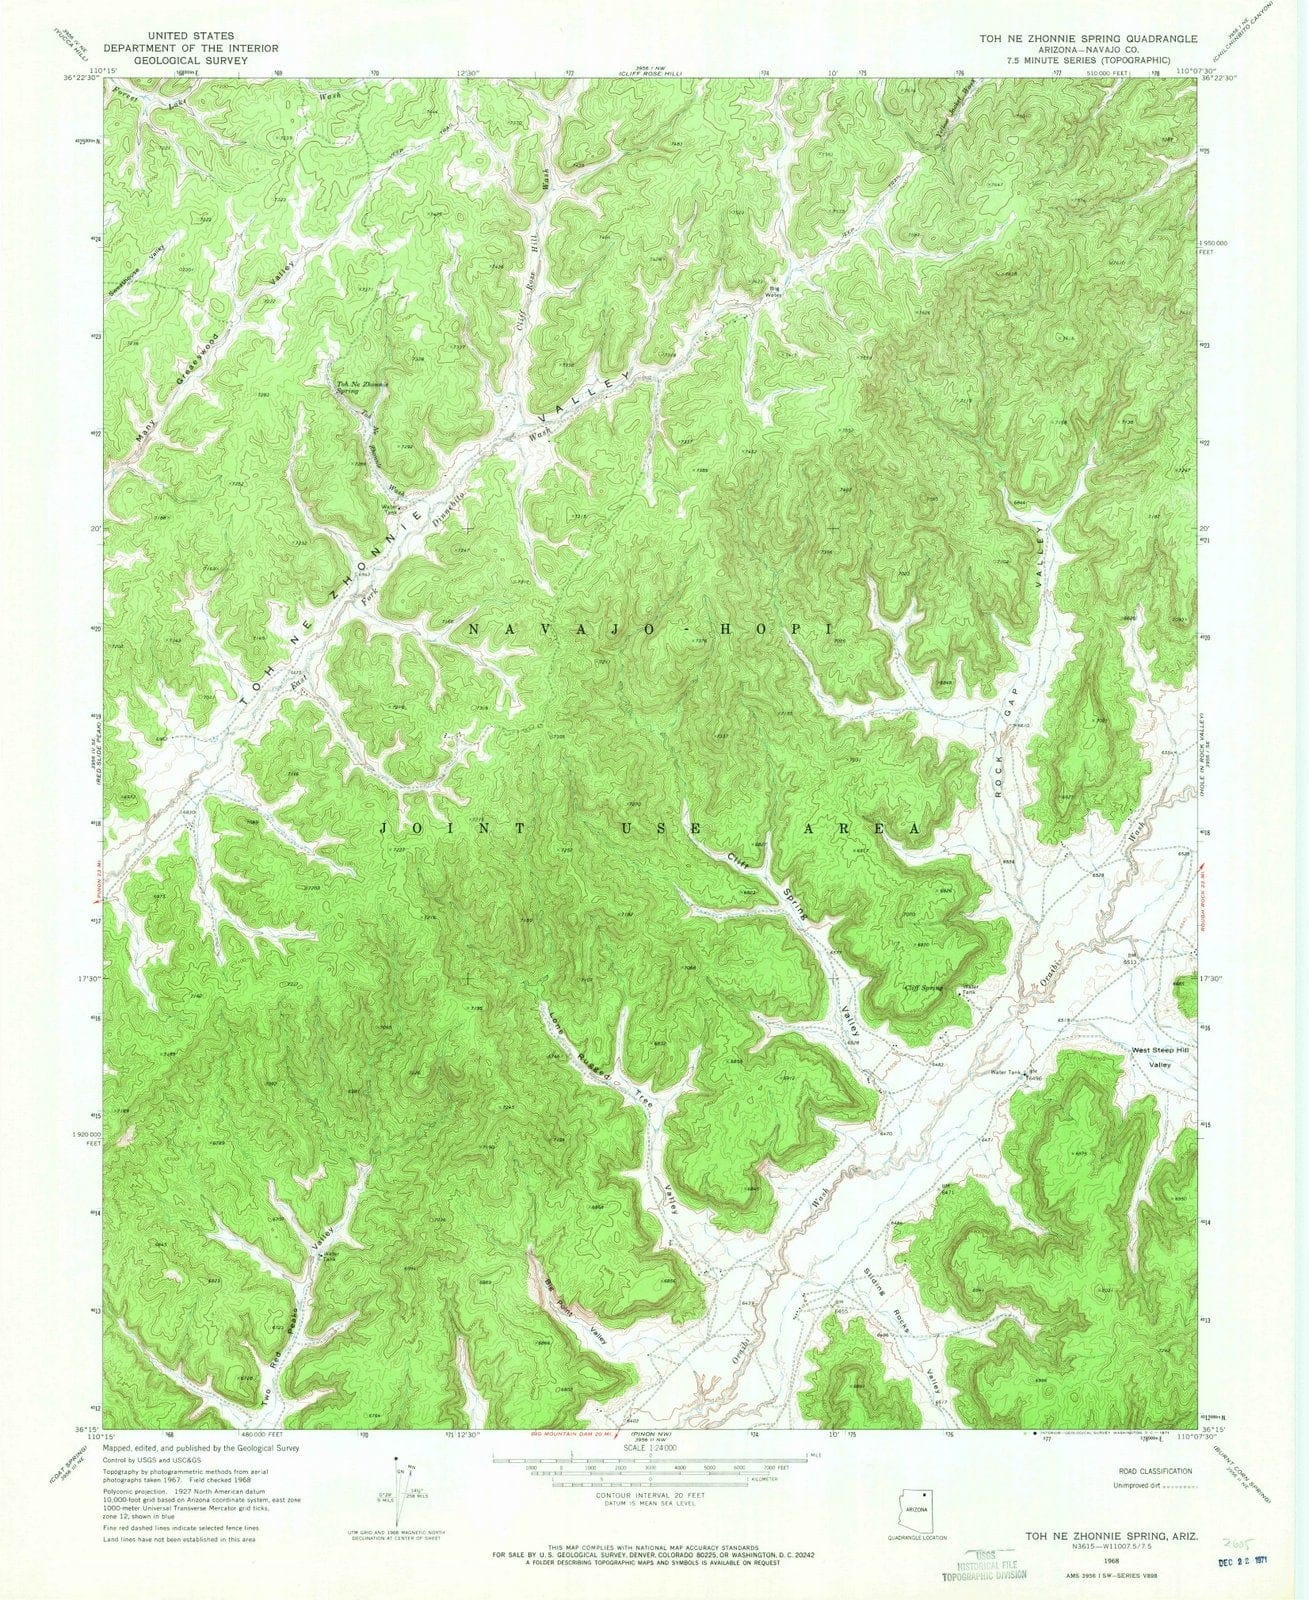 1968 Toh Zhonnie Spring, AZ - Arizona - USGS Topographic Map